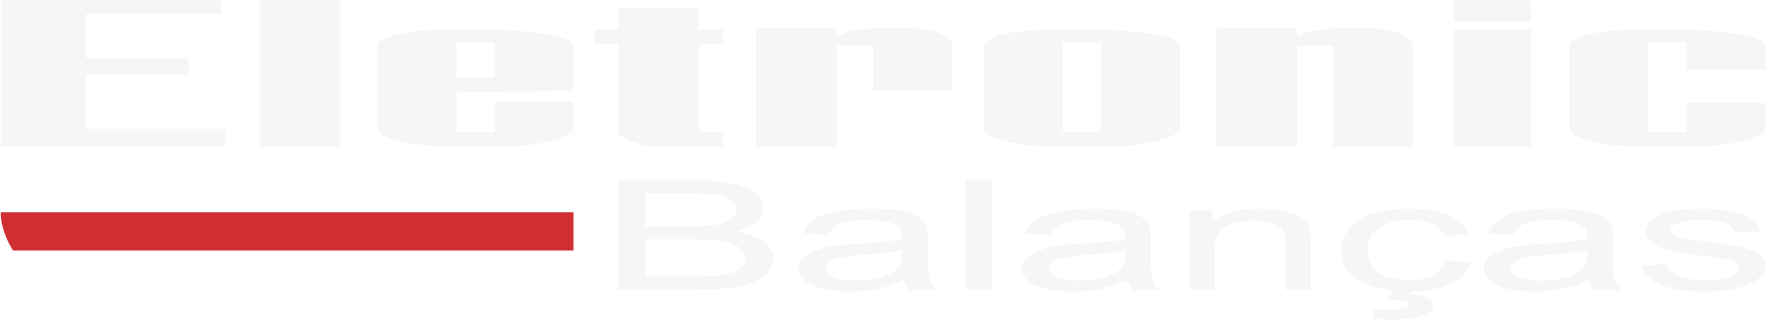 Eletronic Balanças - Laboratórios de Calibração - Massa - Rolândia/PR